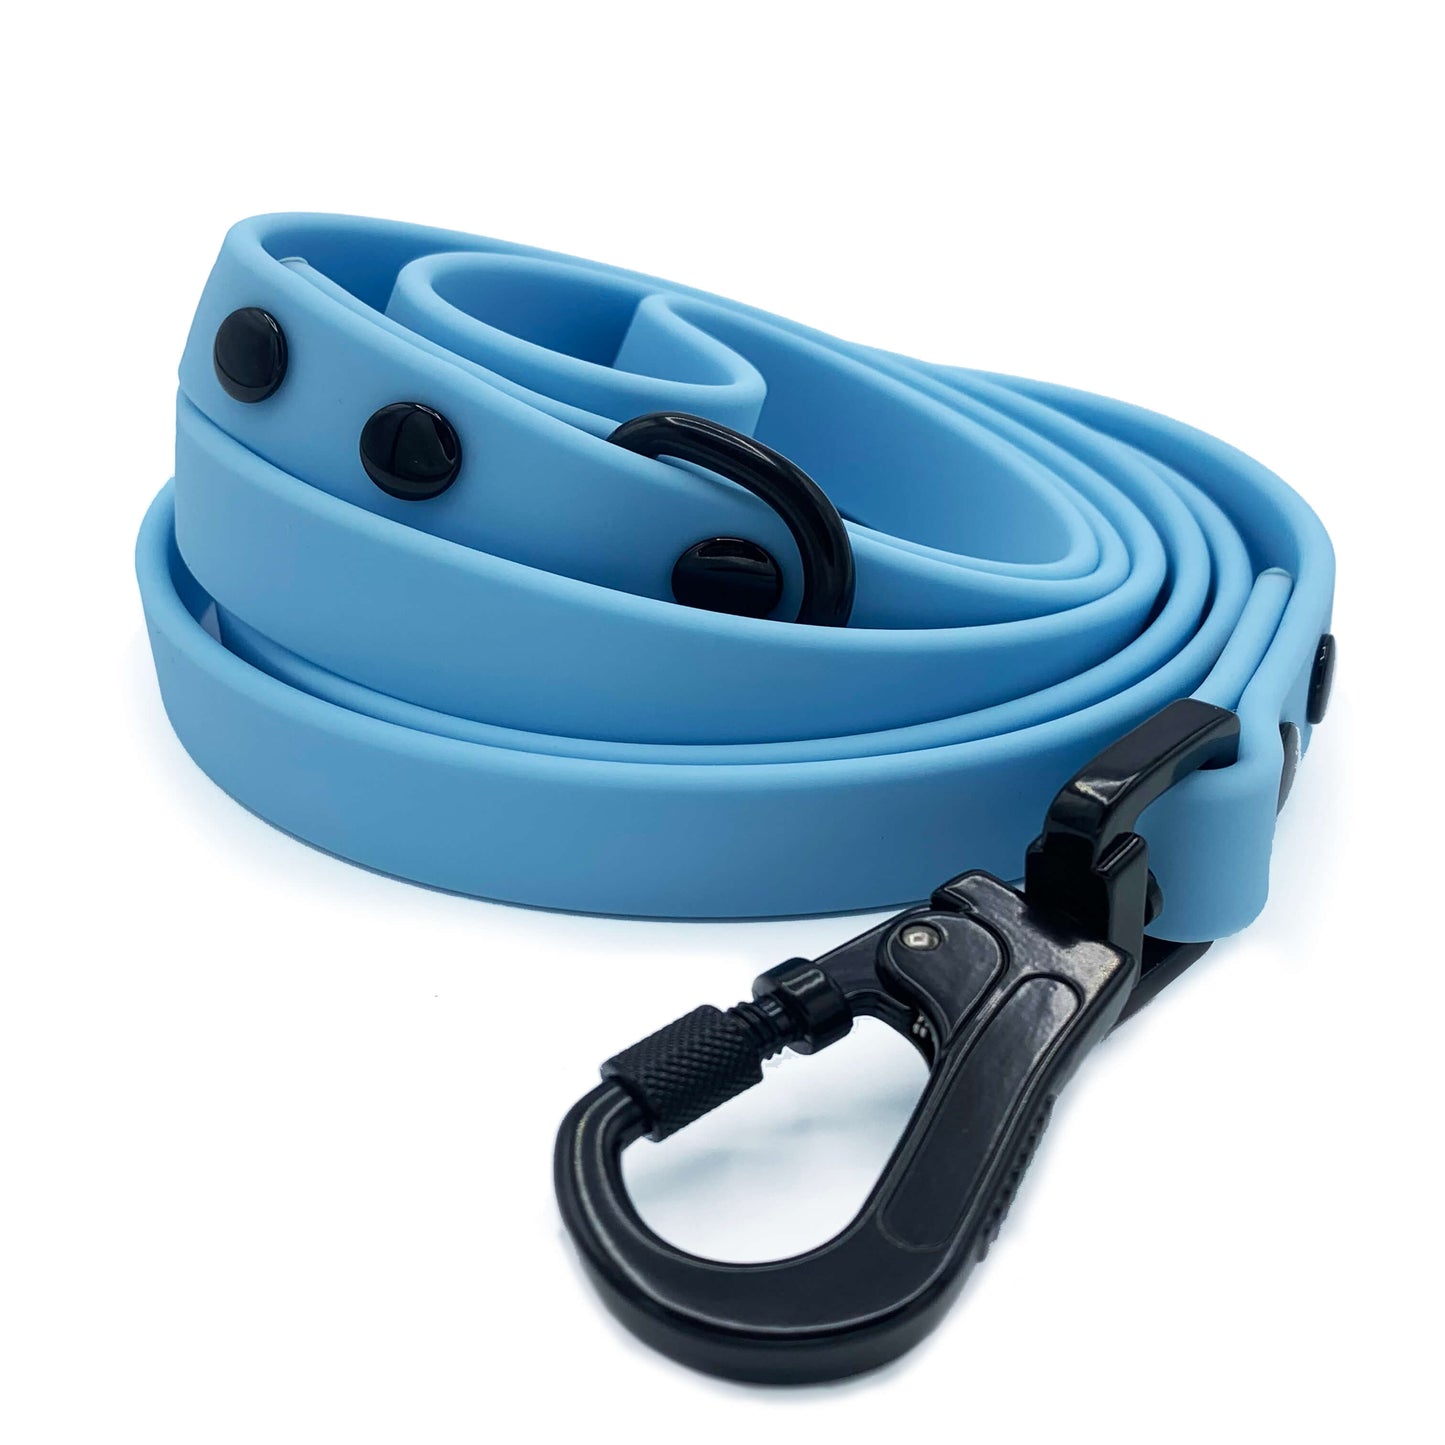 Waterproof Dog Lead Blue